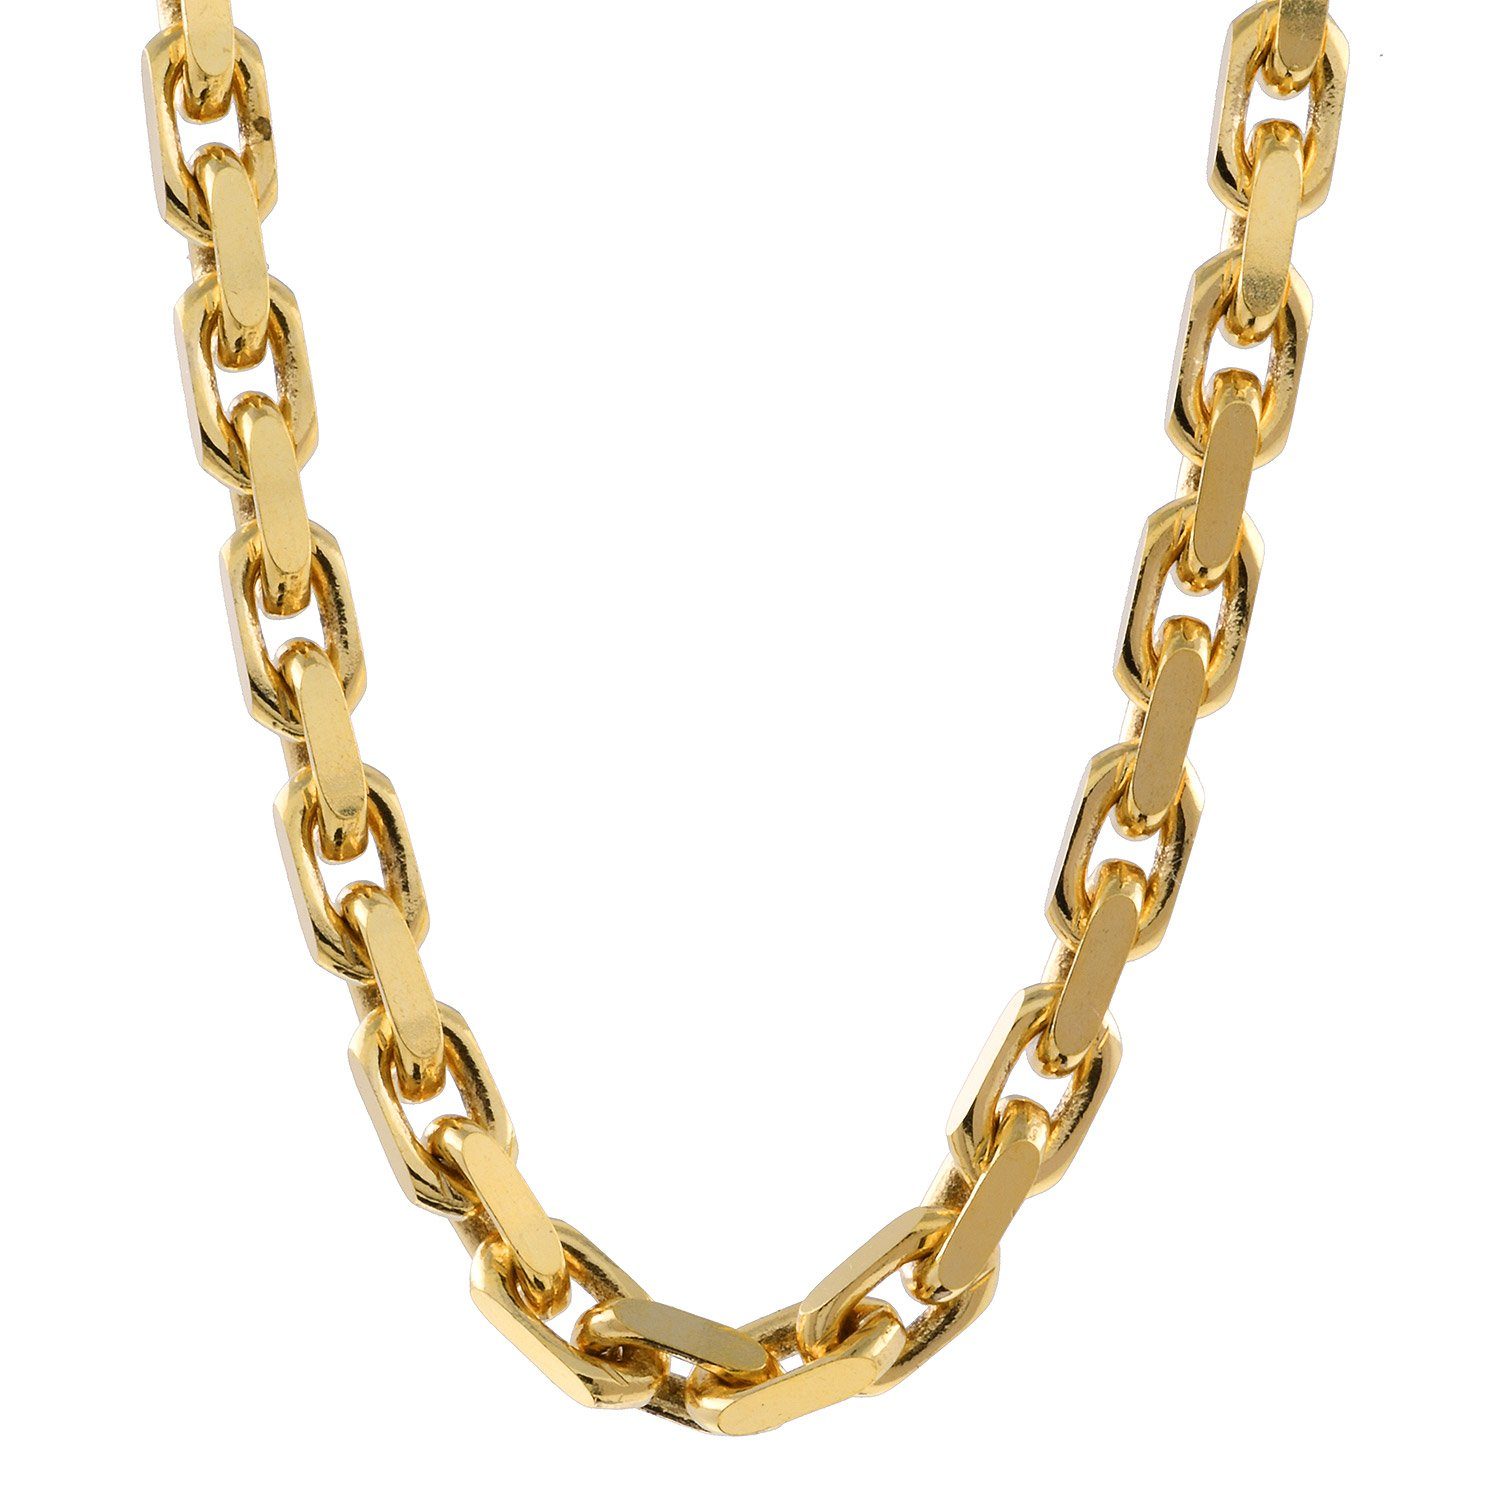 HOPLO Goldarmband 2,5 mm 750 - 18 Karat Gold Armkette Ankerkette  diamantiert massiv Gold hochwertige Goldkette - Länge nach Wahl